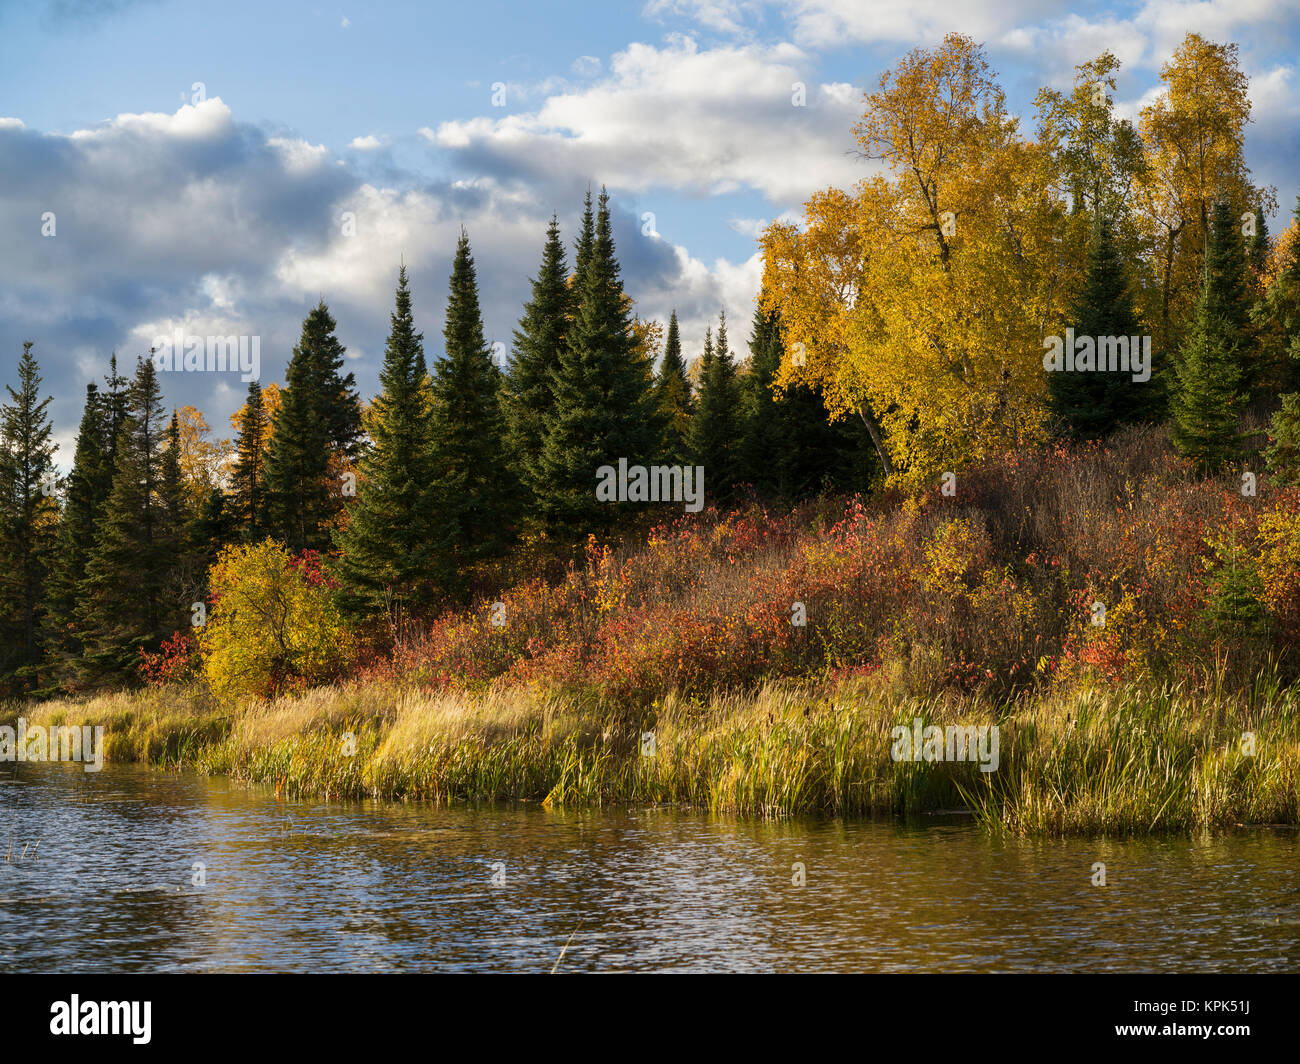 Couleur d'automne feuillage sur les arbres et plantes sur la rive du lac des Bois ; le lac des Bois, Ontario, Canada Banque D'Images